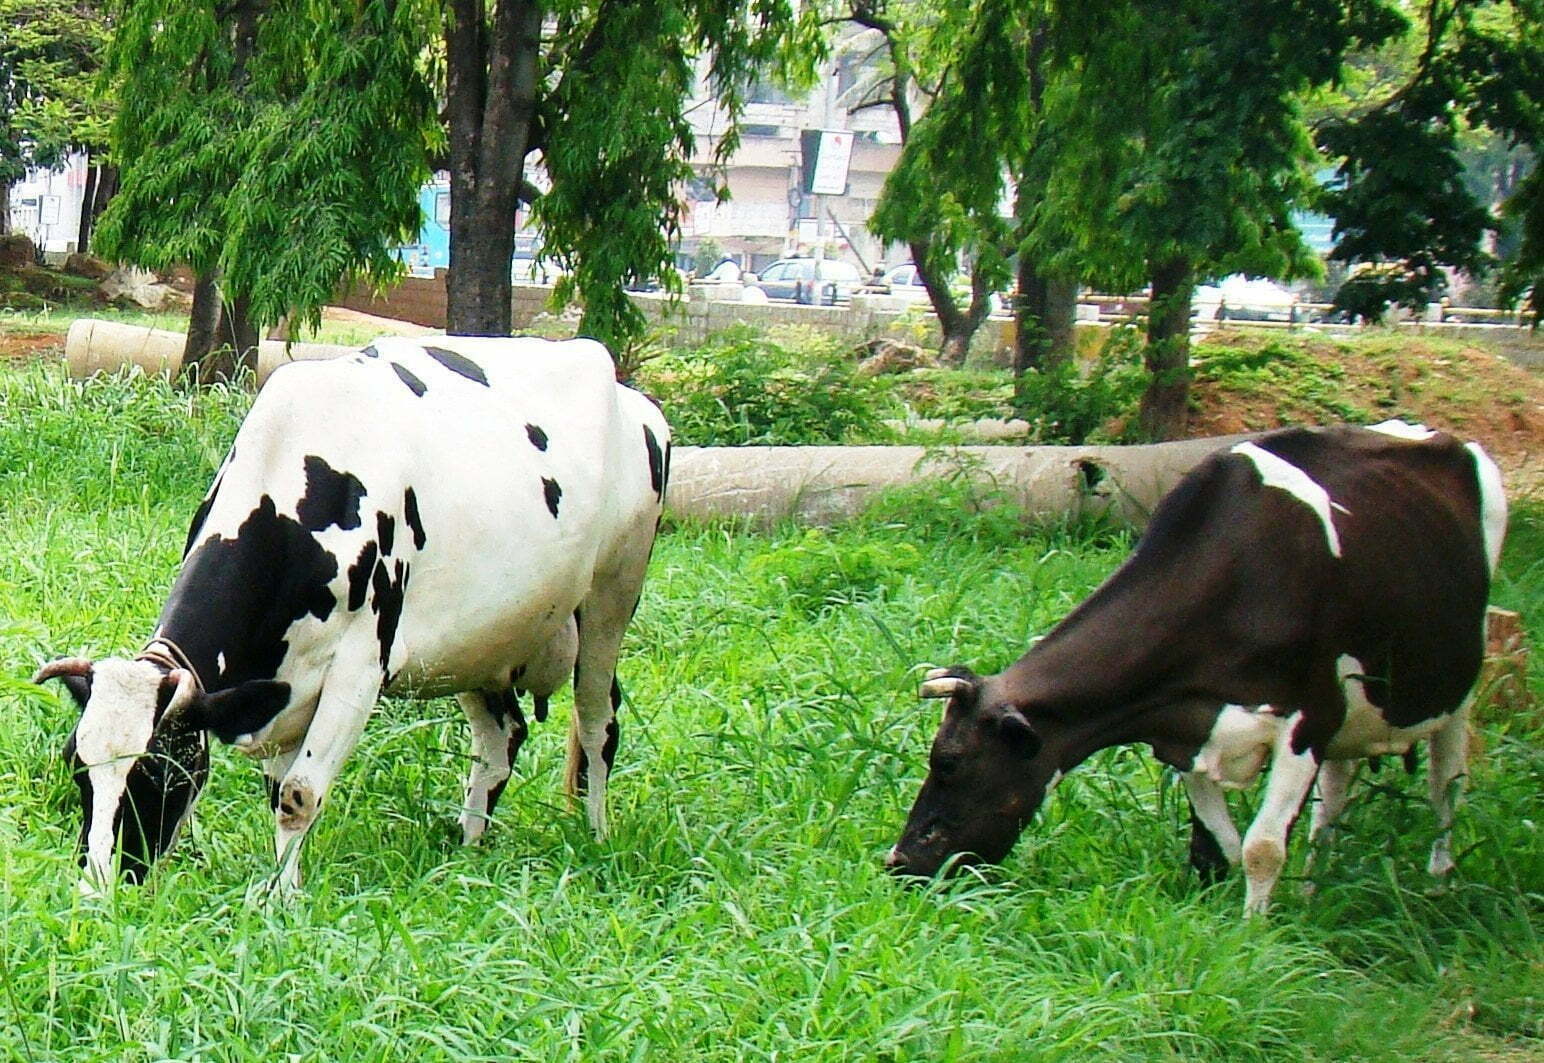 Pachai boomi - Cows